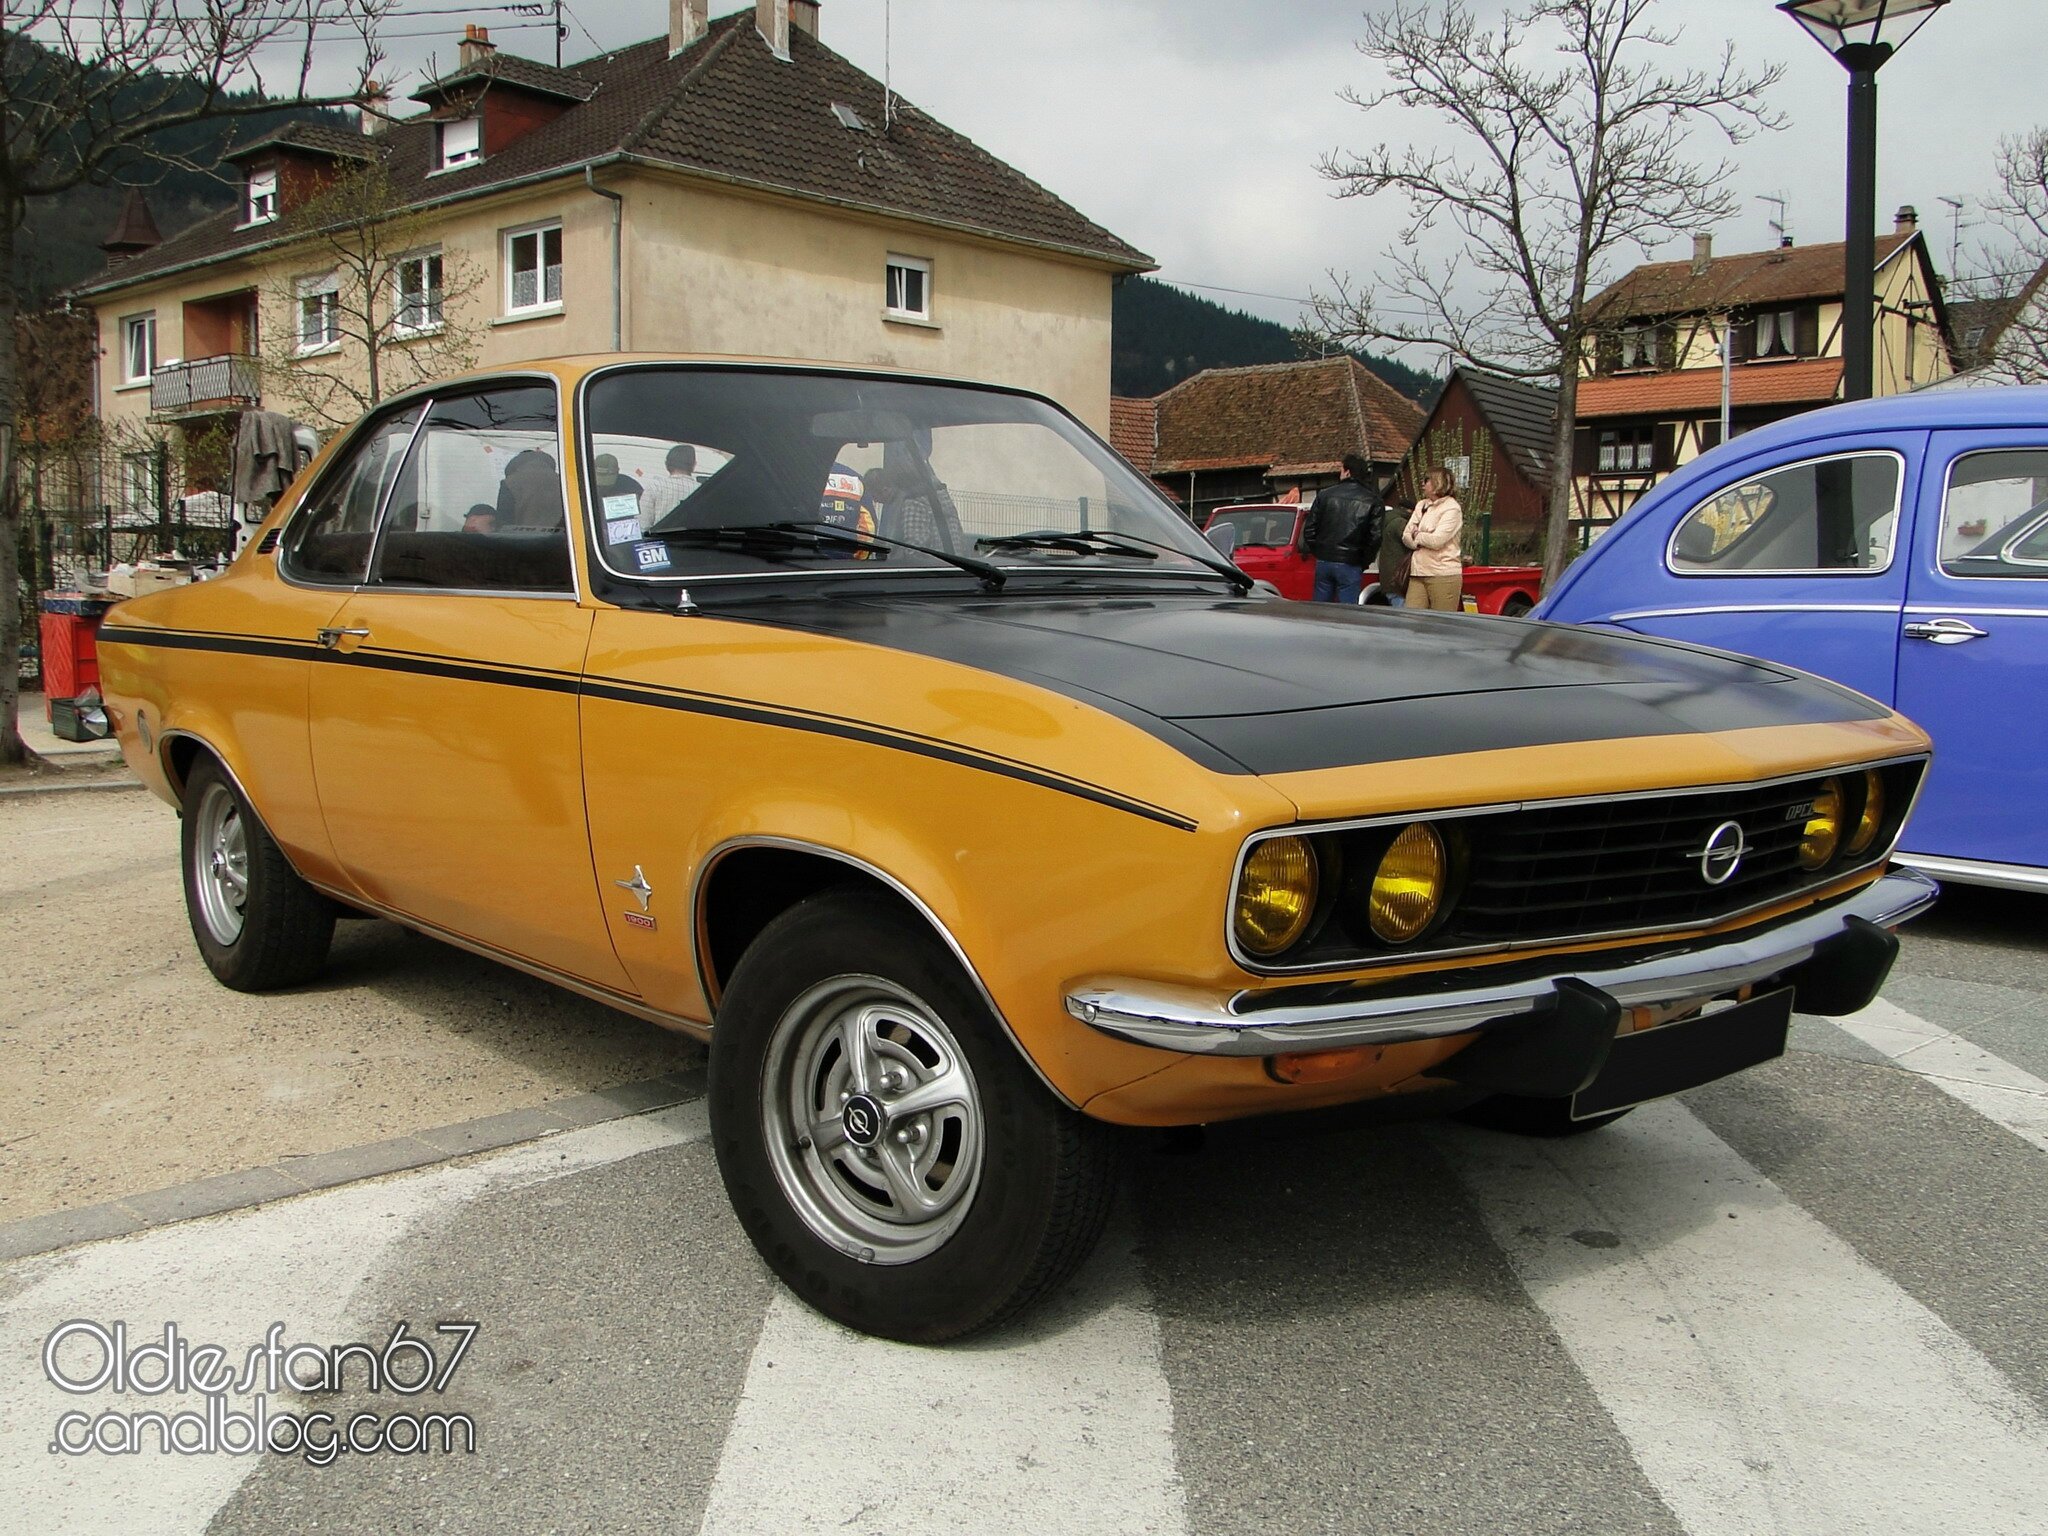 Opel Manta SR 1970